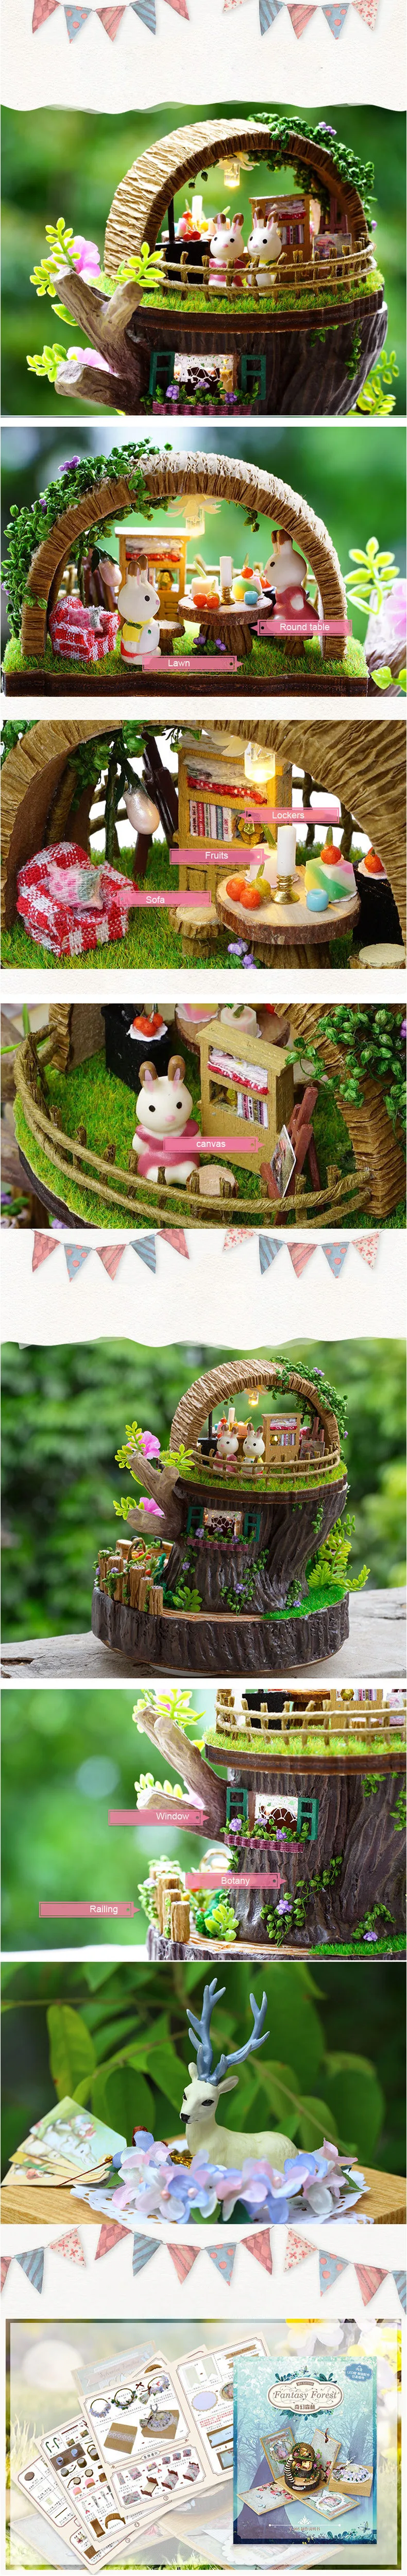 Mylb новые Кукольный дом Мебель DIY Миниатюрный 3D Деревянный miniaturas кукольный домик Игрушечные лошадки для детей подарки на день рождения Фэнтези лес